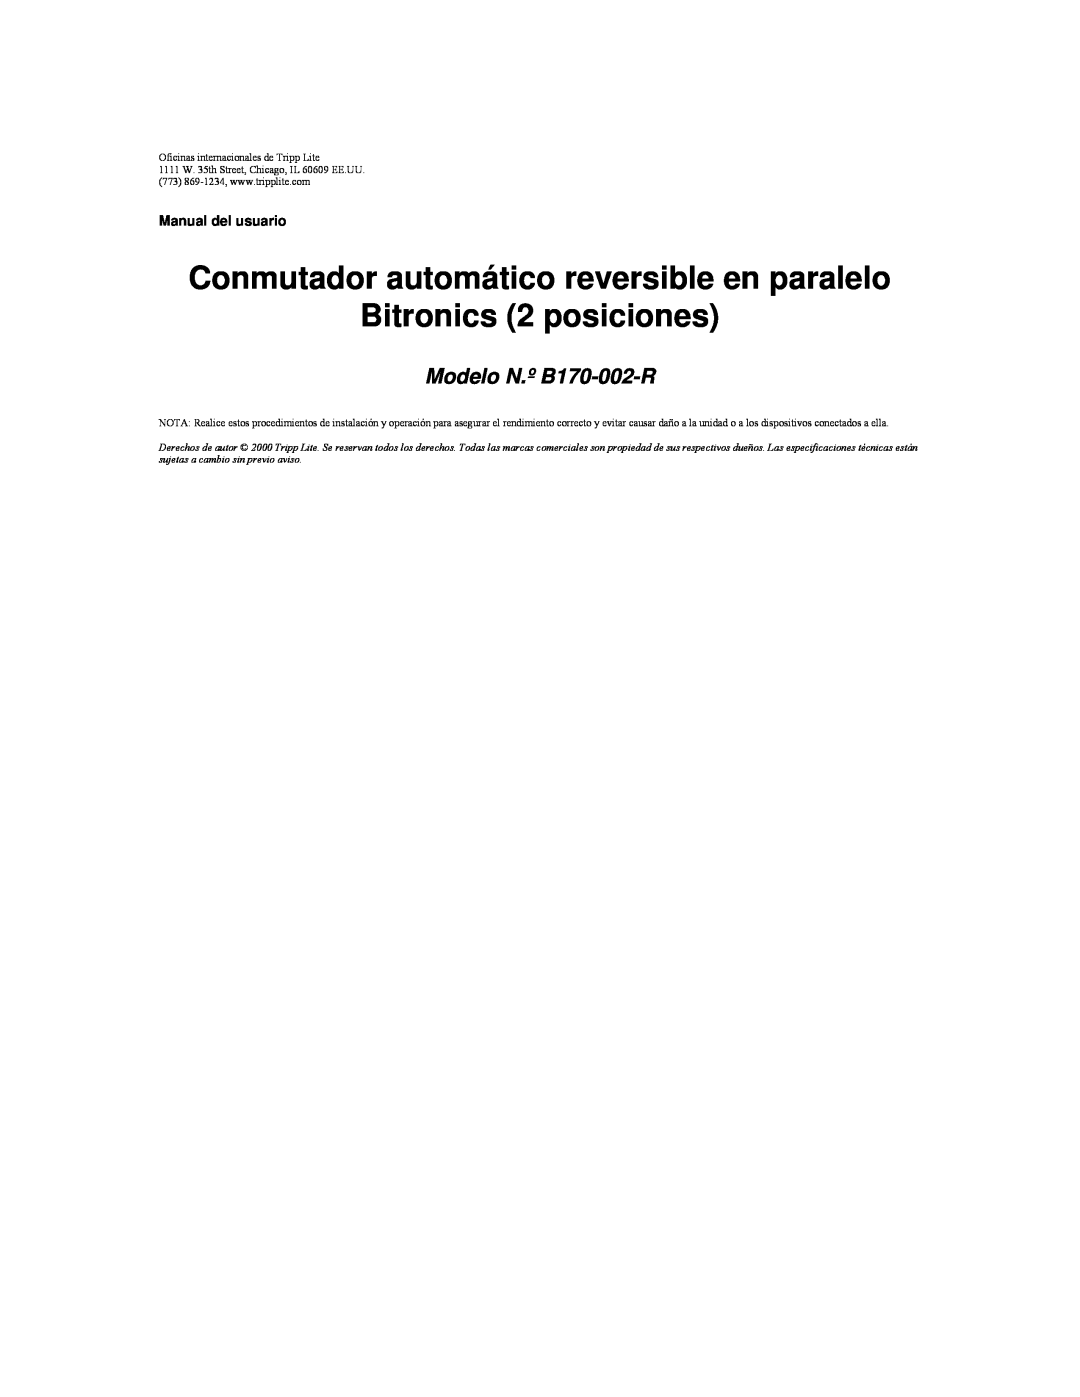 Tripp Lite user manual Conmutador automático reversible en paralelo Bitronics 2 posiciones, Modelo N.º B170-002-R 